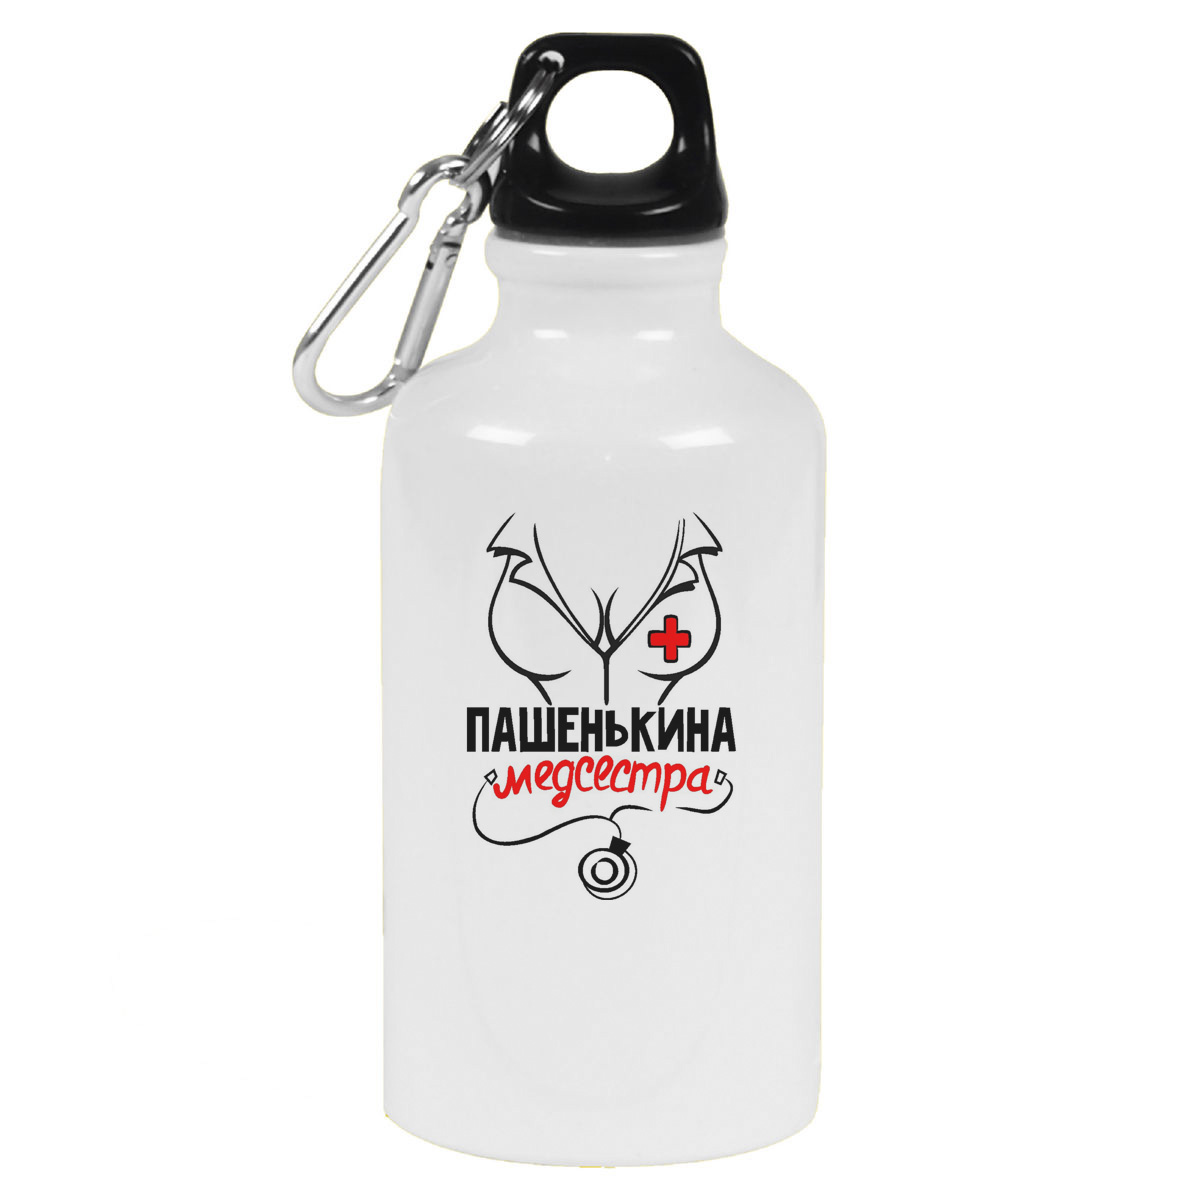 Бутылка спортивная CoolPodarok Медсестра Пашенькина